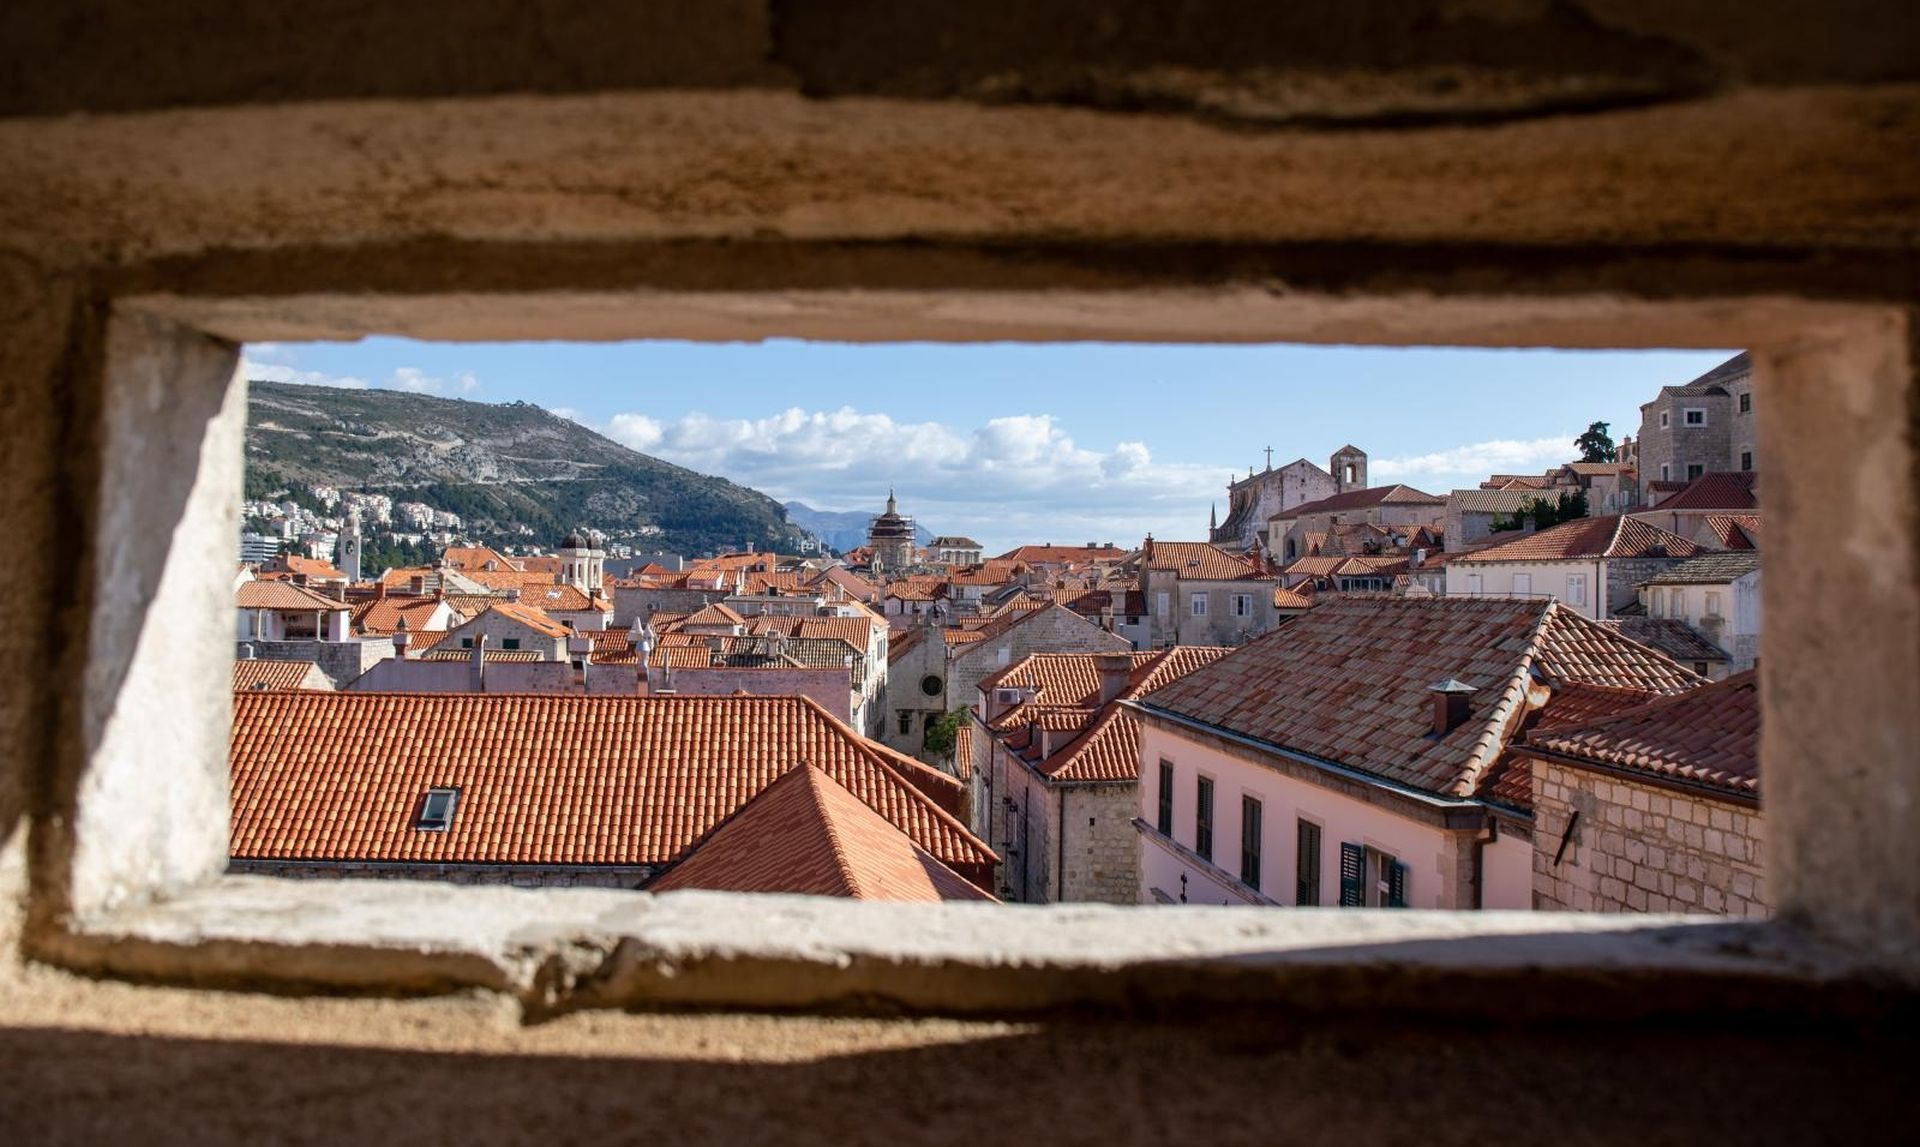 08.02.2020., Zidine, Dubrovnik - Gradski prizori sa zidina.
Photo: Grgo Jelavic/PIXSELL